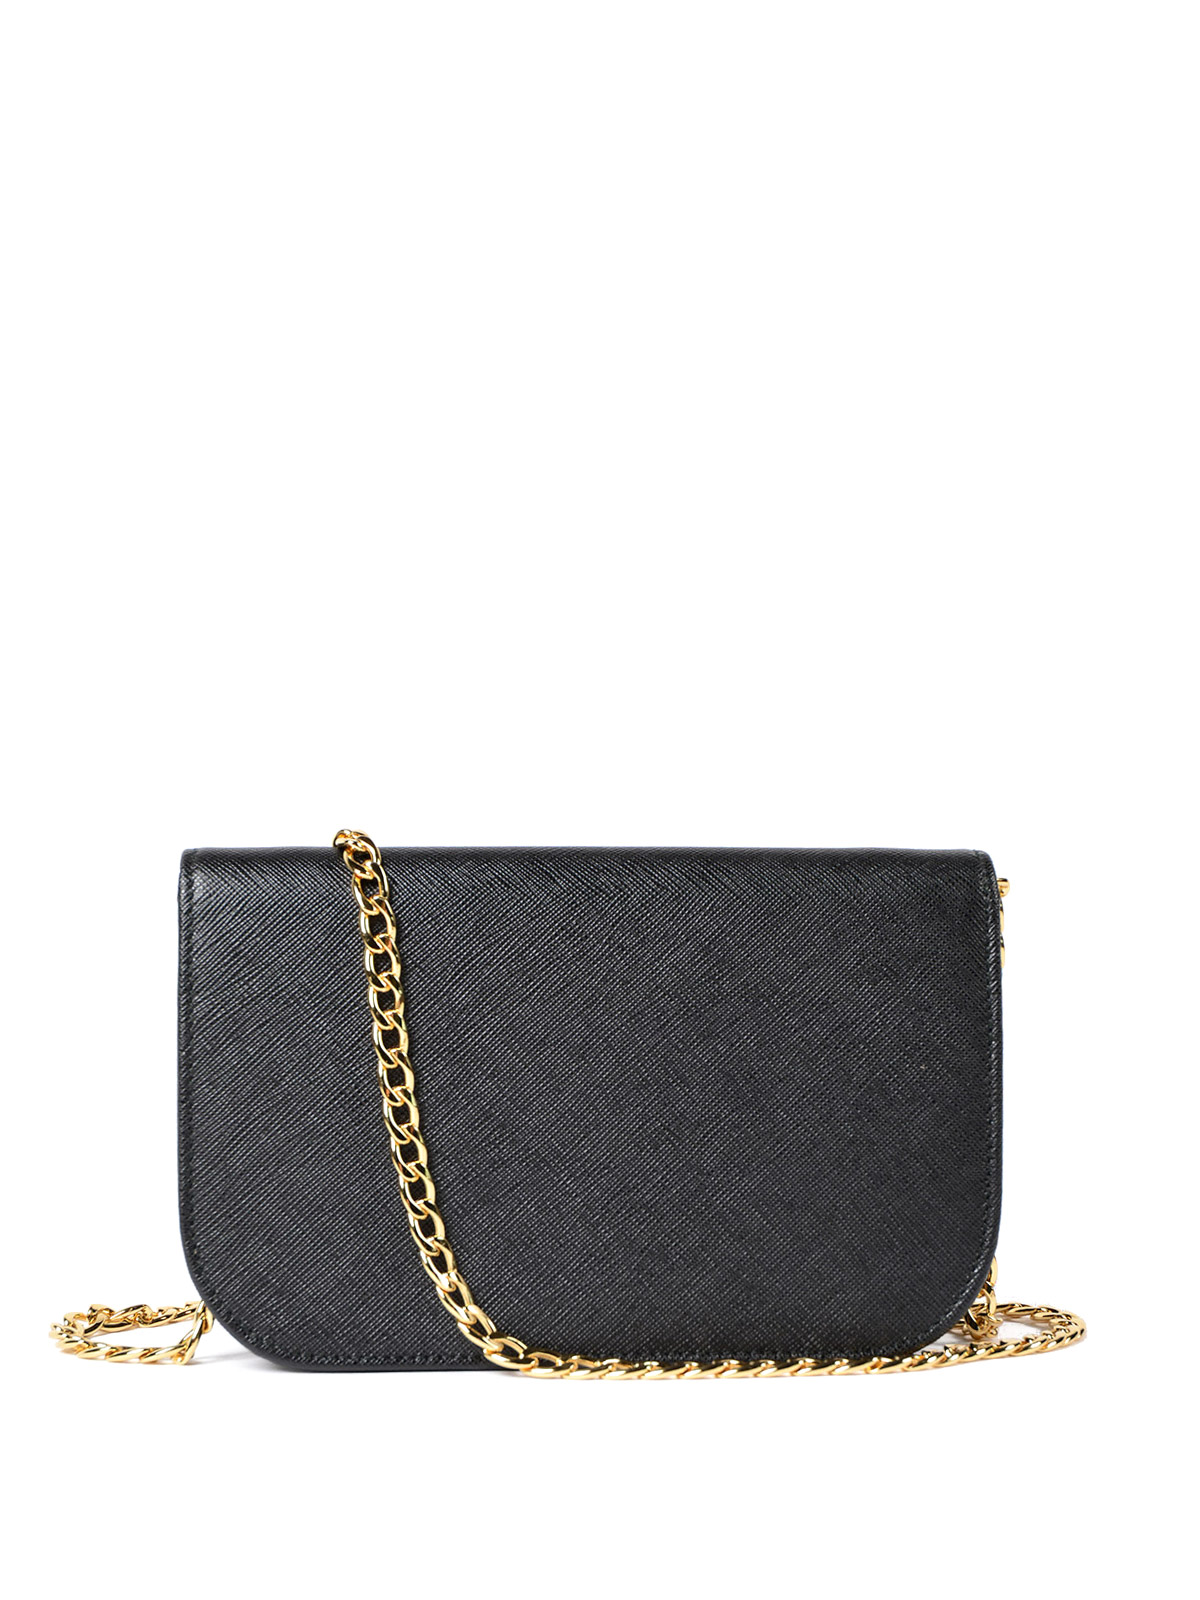 Prada - Saffiano leather small black bag - shoulder bags - 1BH019NZV002